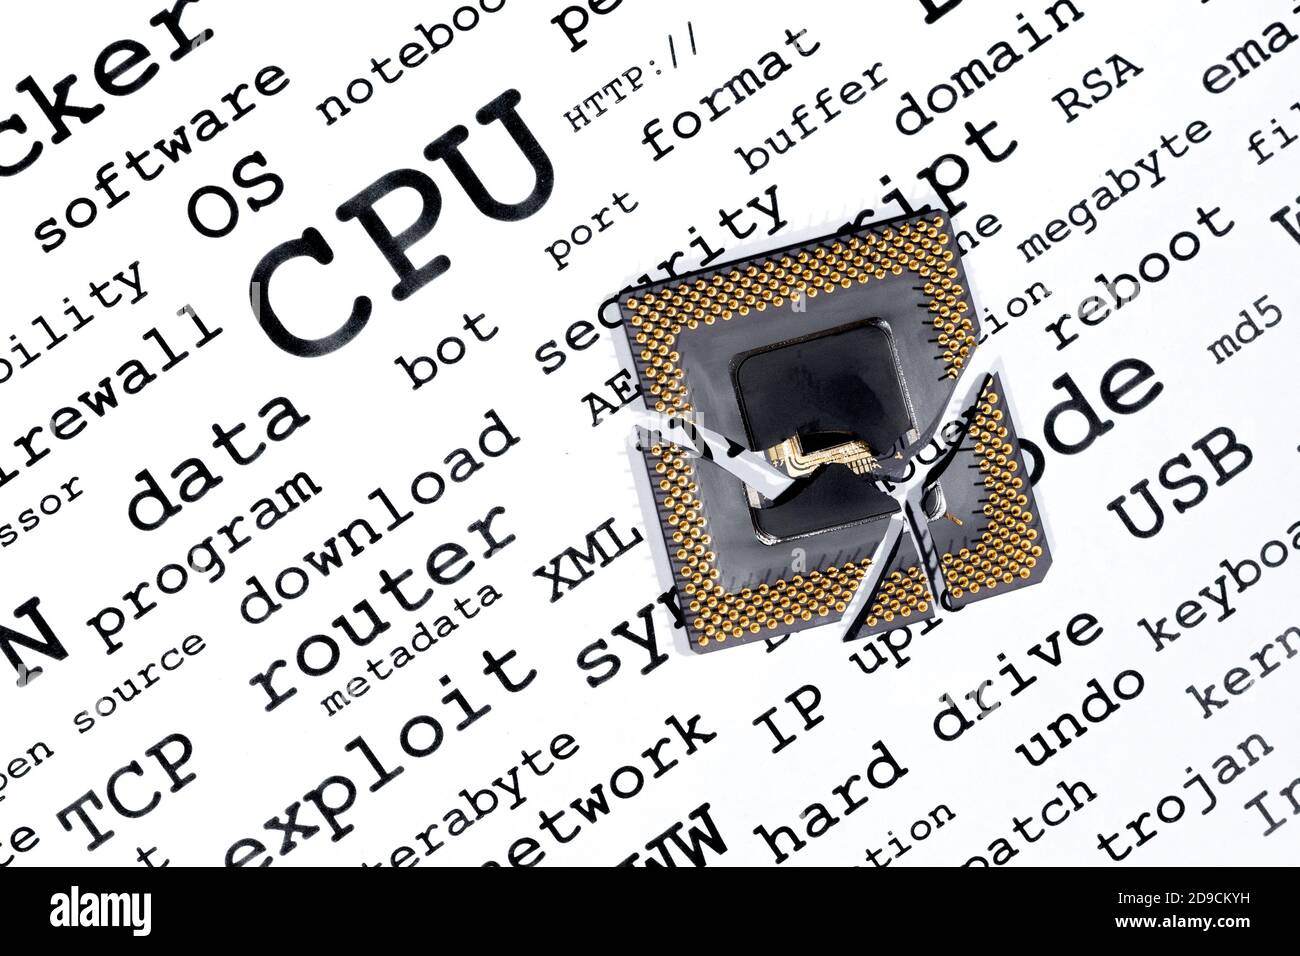 Eine gerissene, gebrochene CPU ruht auf dem Computer Verwandte Suchbegriffe. Stockfoto